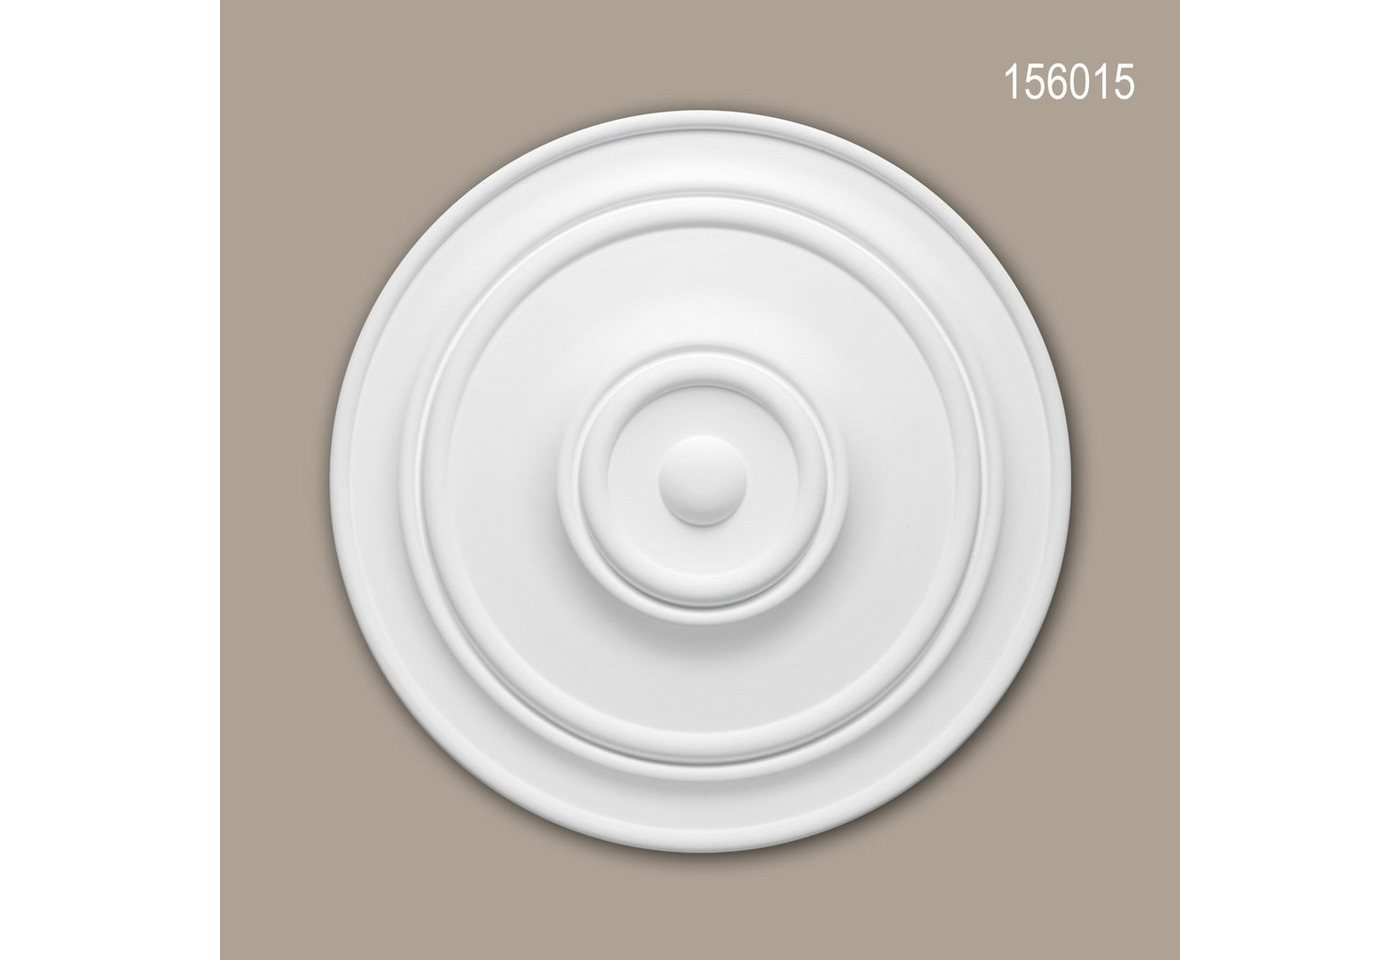 Profhome Decken-Rosette 156015 (Rosette, 1 St., Deckenrosette, Medallion, Stuckrosette, Deckenelement, Zierelement, Durchmesser 55,5 cm), weiß, vorgrundiert, Stil: Zeitlos / Klassisch von Profhome